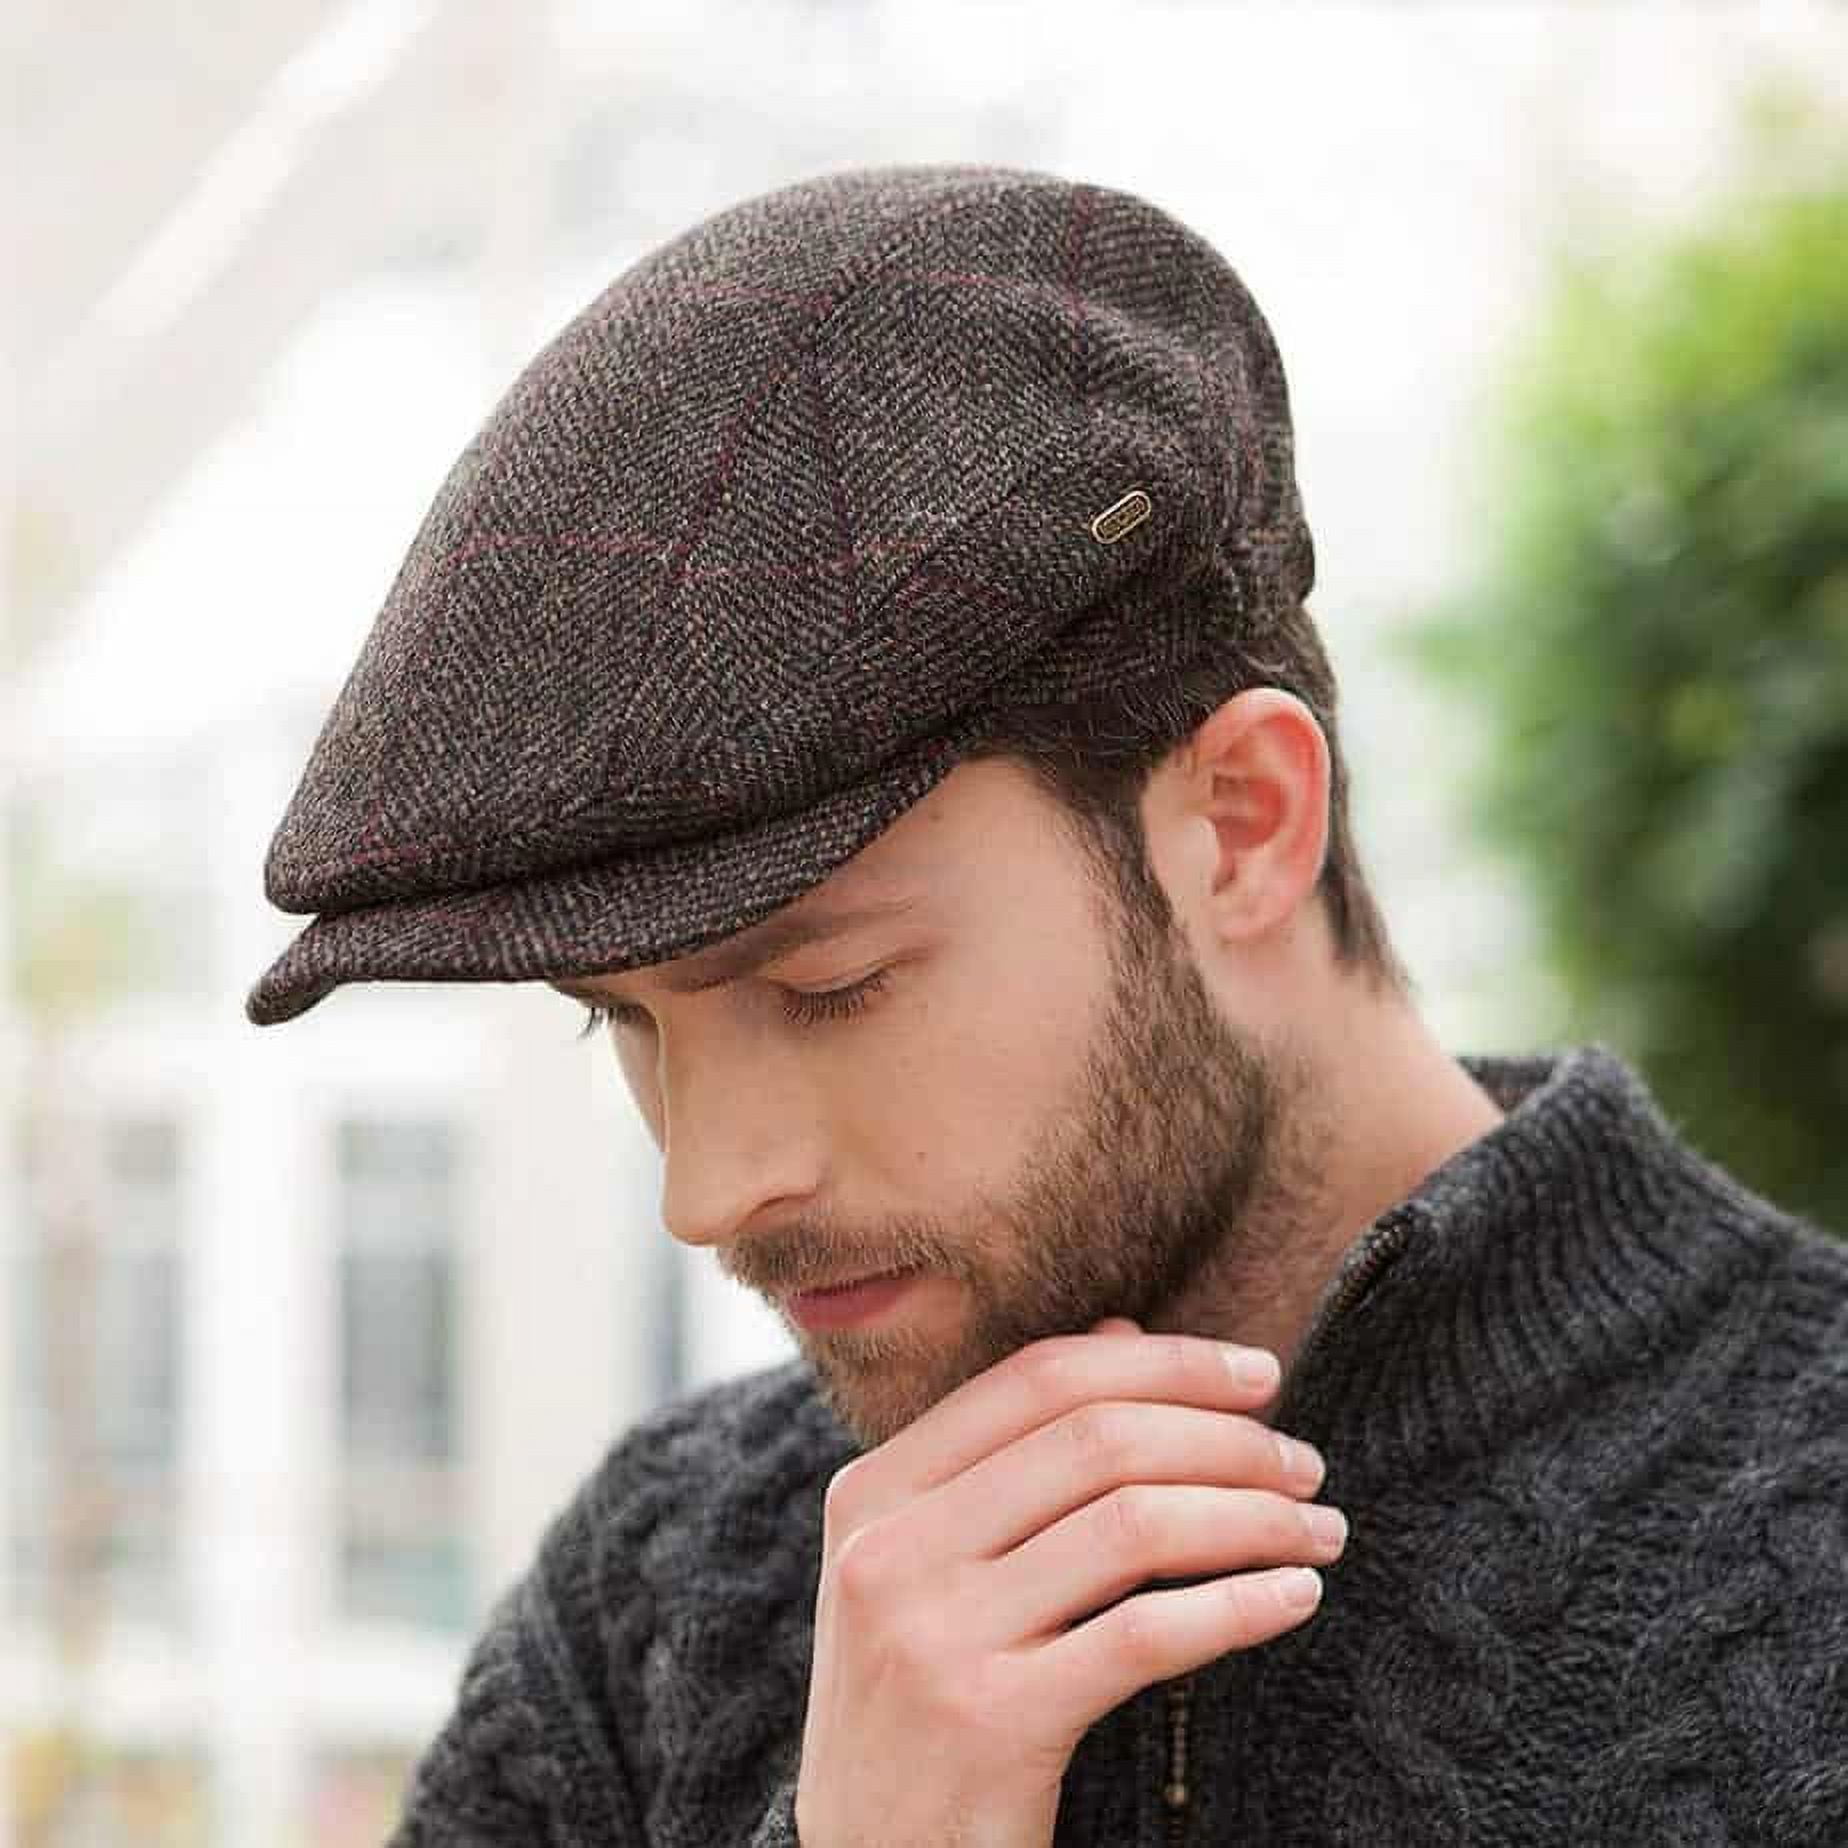 Masculine Hair Caps Designed For Men, Minority